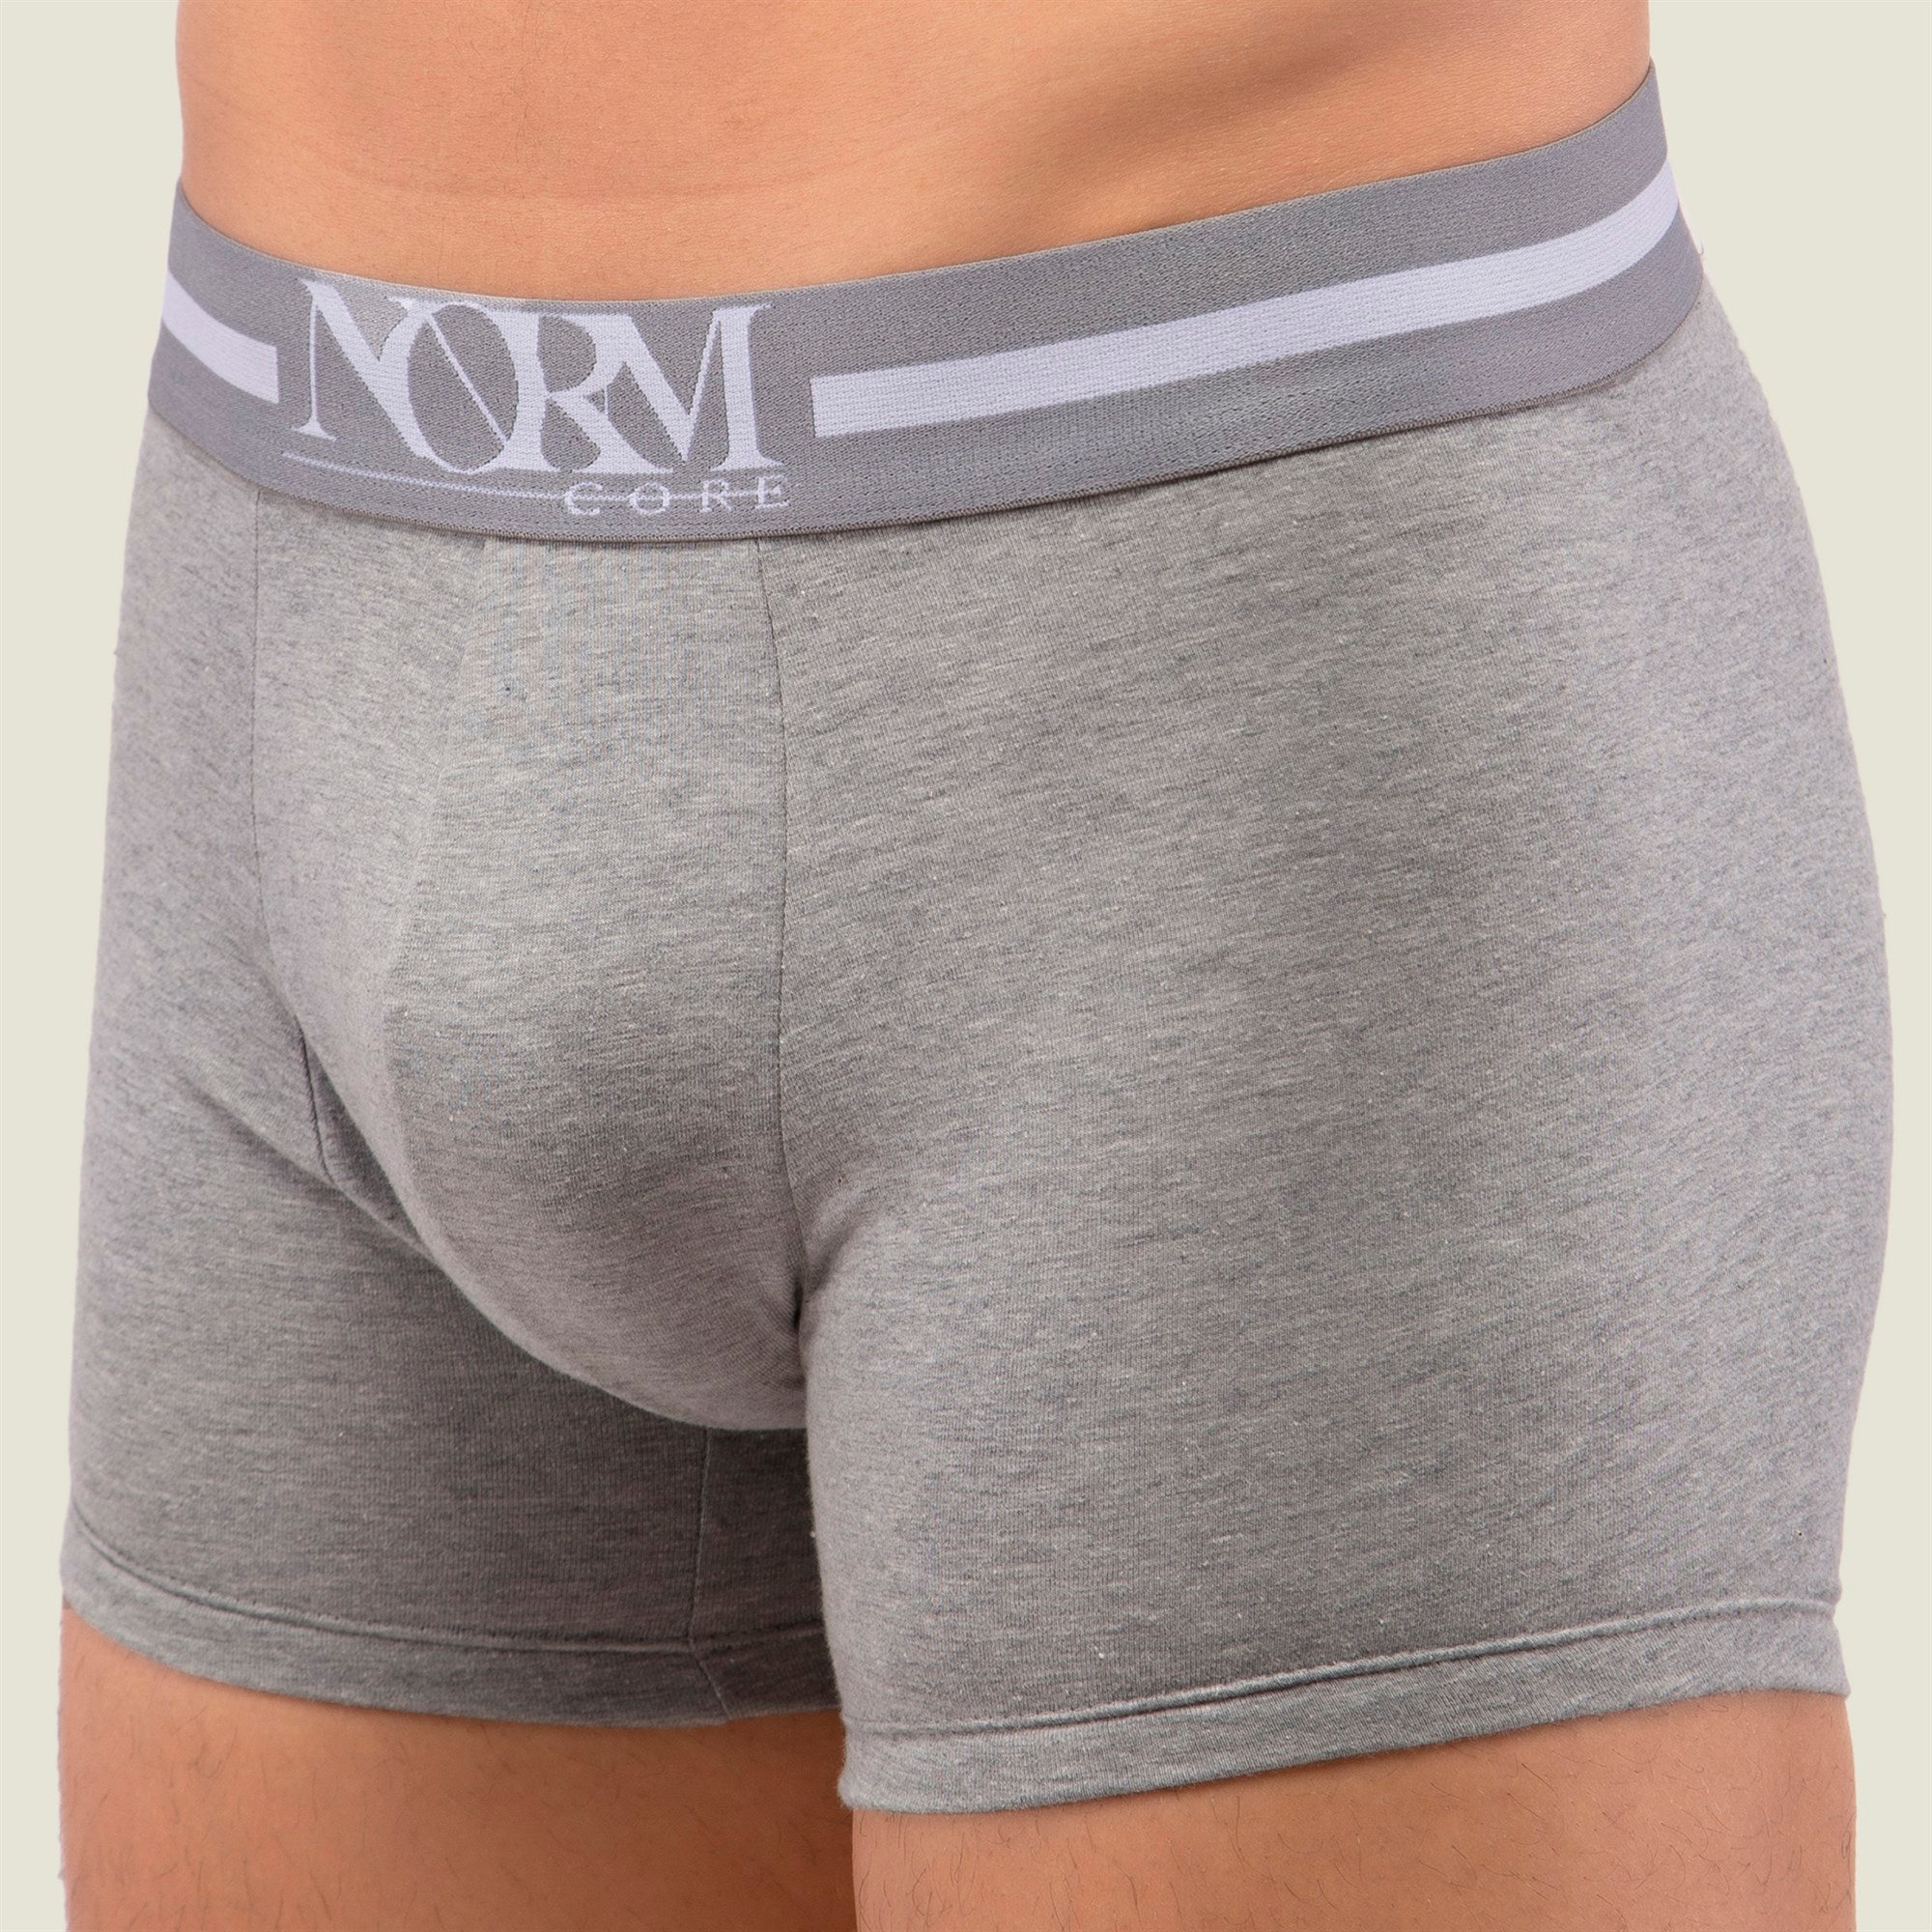 Normcore Cotton Innerwear - Maroon Trunk with Silver Waistband Underwear